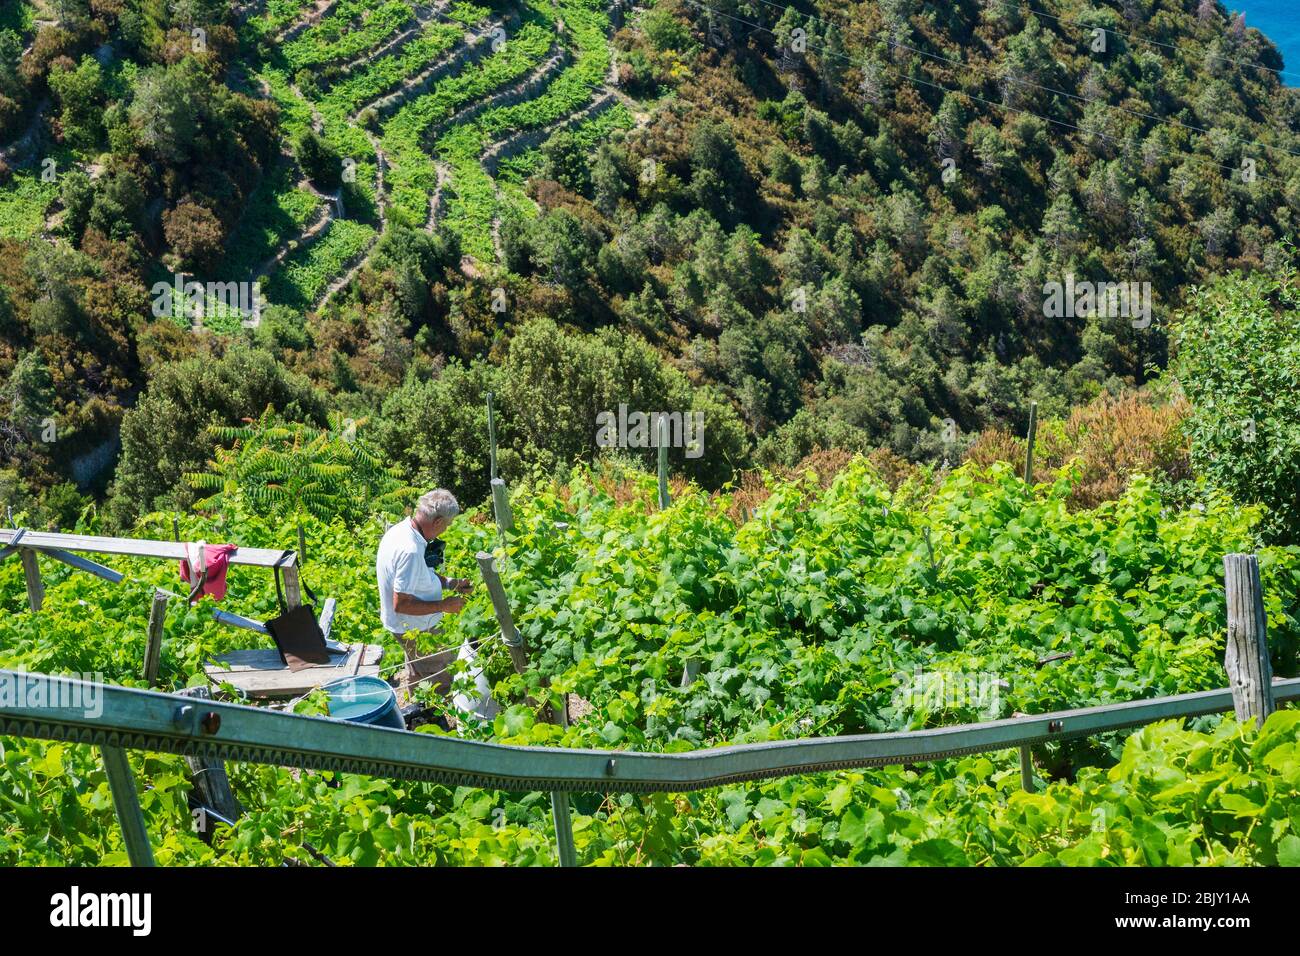 Adulto mayor que trabaja en su viñedo en terrazas junto a su sistema monorraíl utilizado para transportar uvas a su granja en los escarpados viñedos i Foto de stock